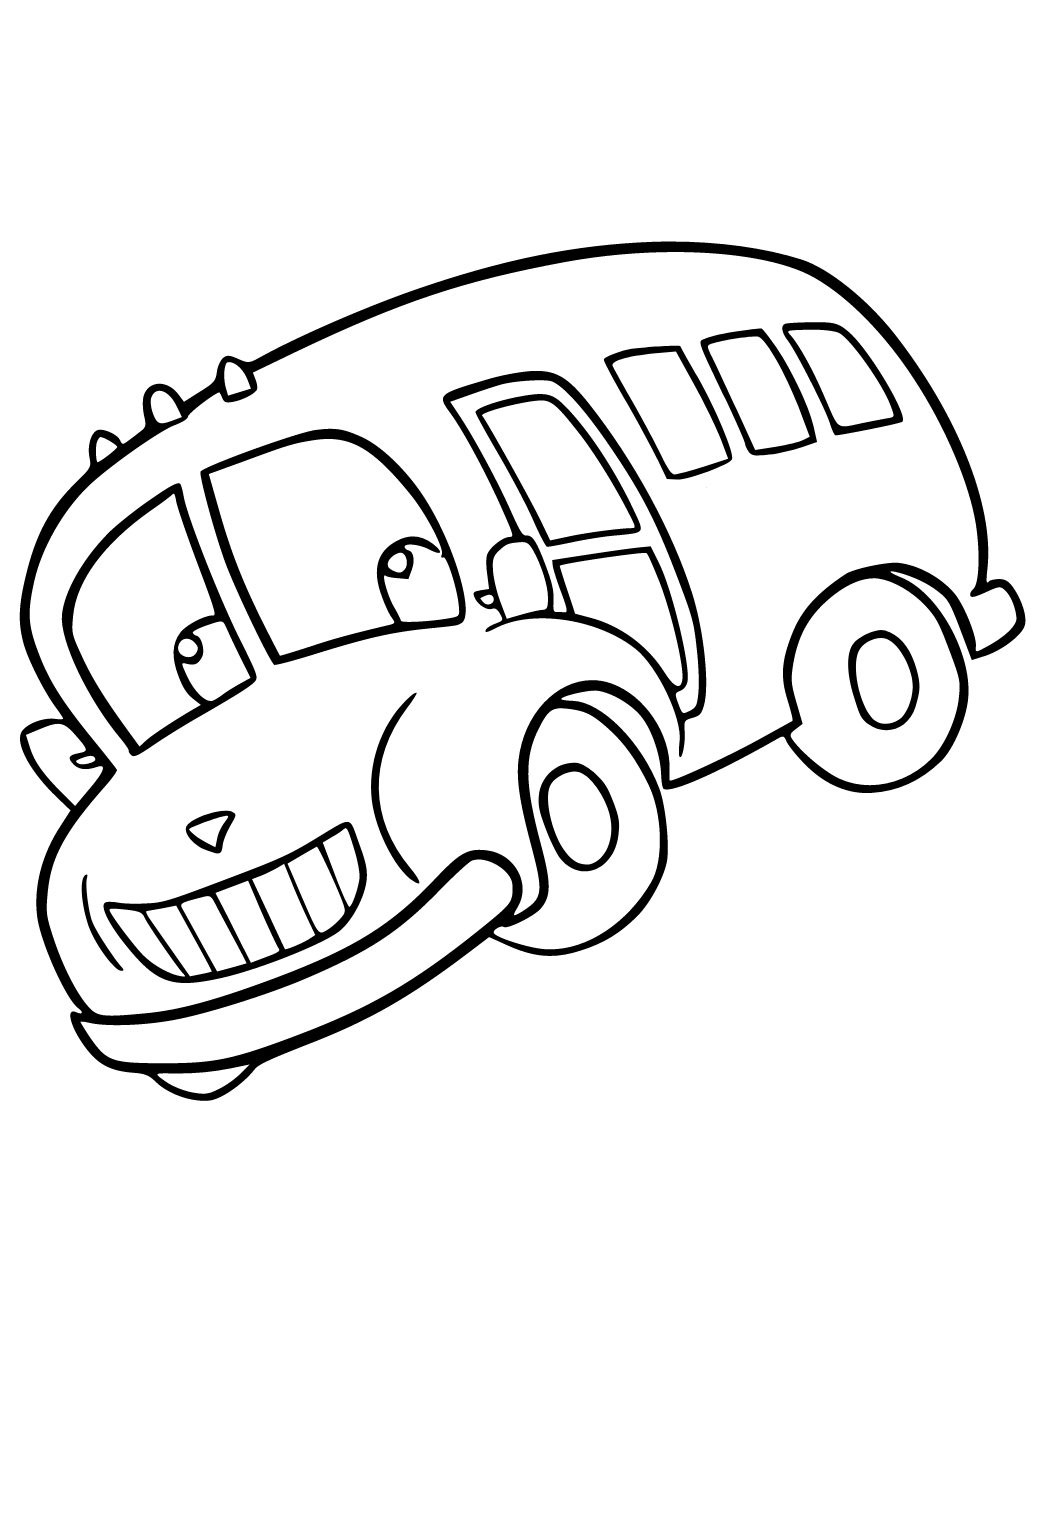 Ônibus Escolar